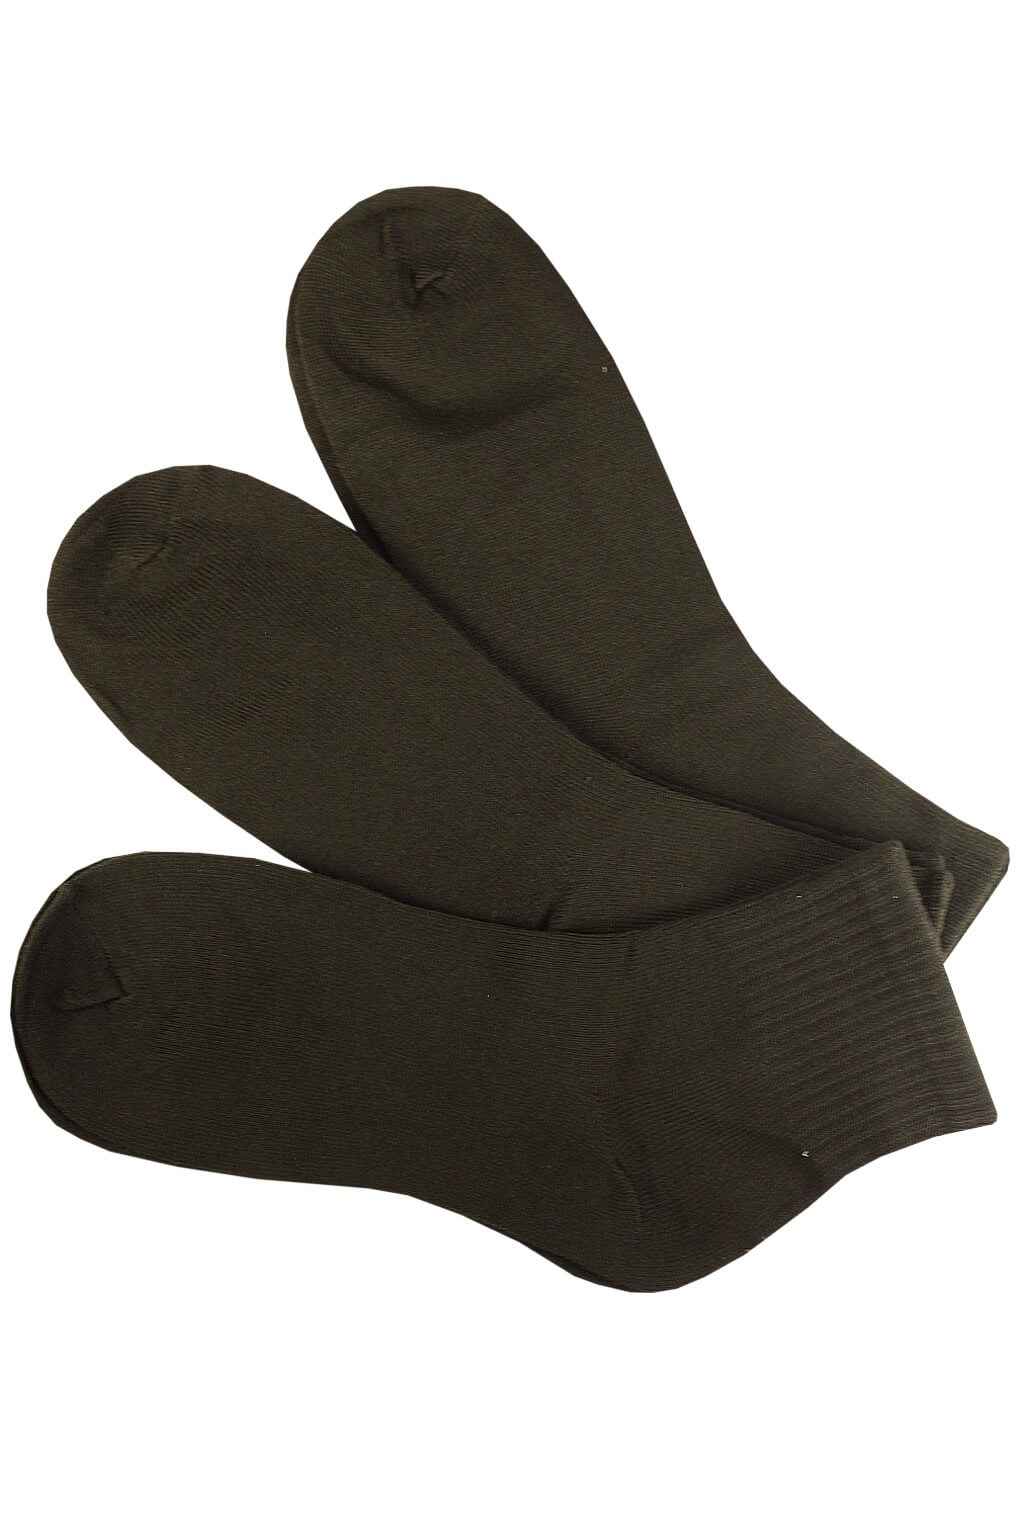 Pánské ponožky bavlněné ZM-301C - 3 páry 40-43 černá